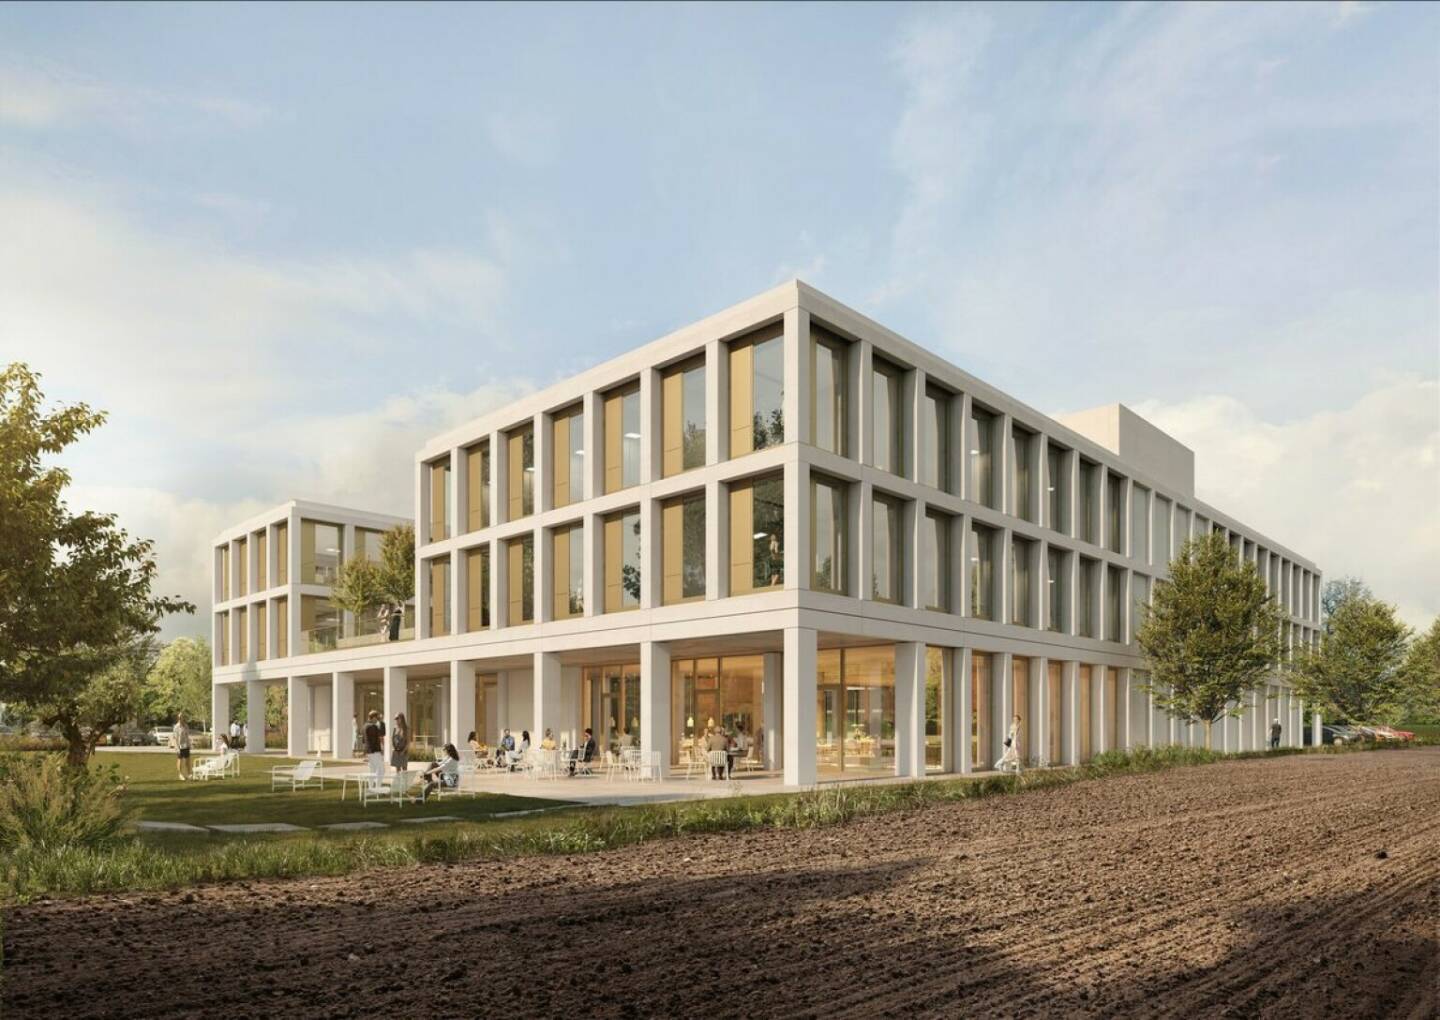 PORR errichtet Rohbau für neue PVS-Hauptverwaltung in Mülheim an der Ruhr © Architekt: Gabor Kovacs Architektur BDA, Visualisierung: Patricia Bagienski